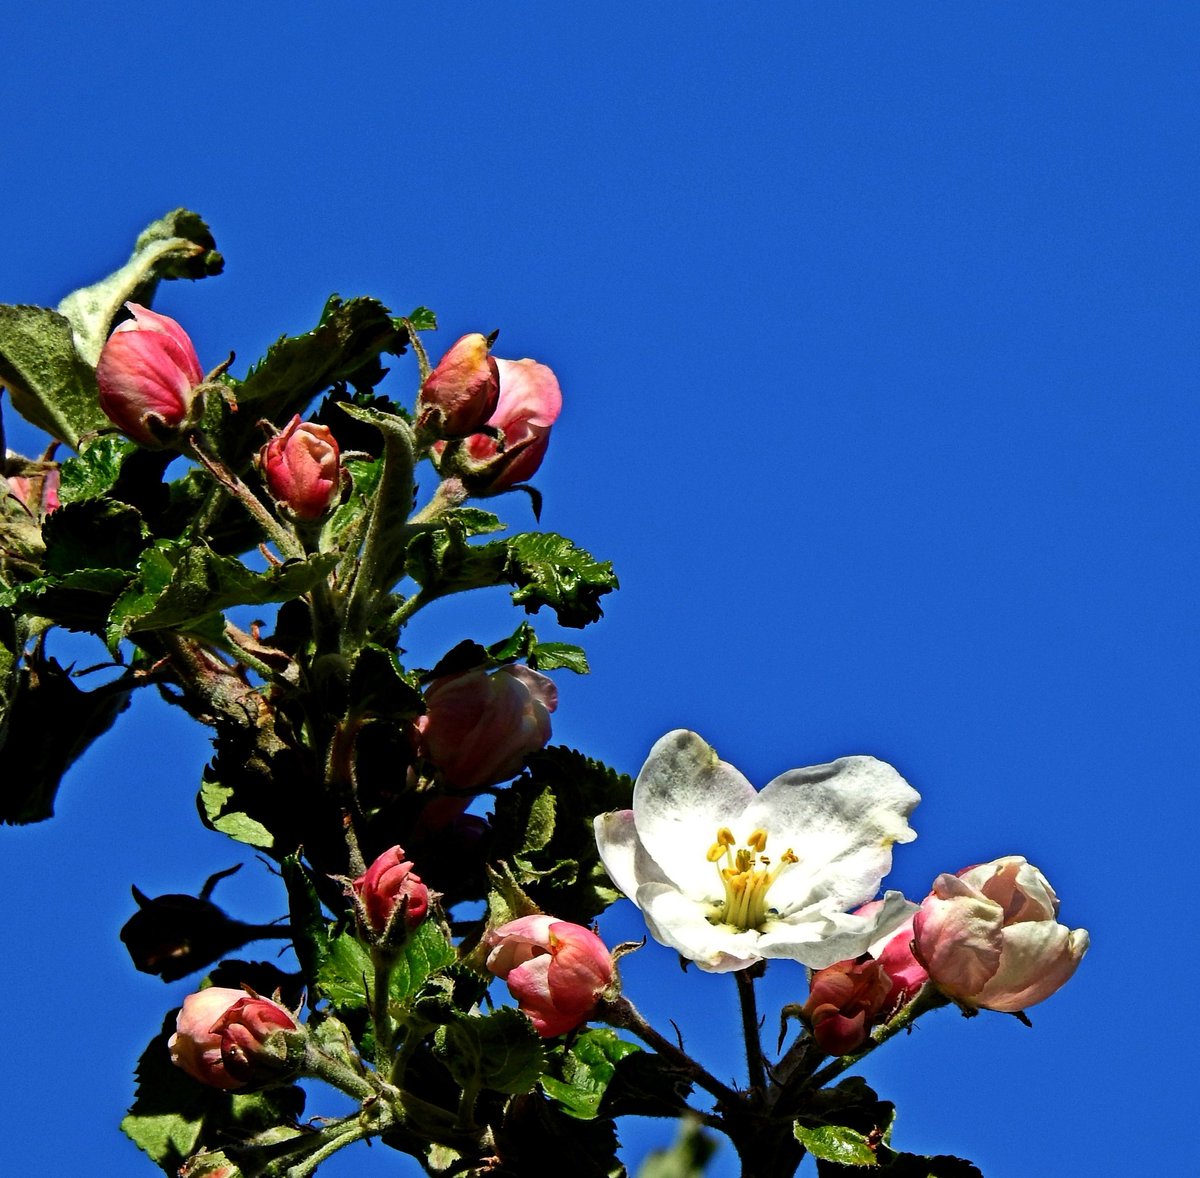 #mei_nmooistefotos #dag2 #blauw  @bosw8er_jochem 🌞🌹🌻🌷🪻
Mooie appelbloesem bij een strak blauwe lucht.